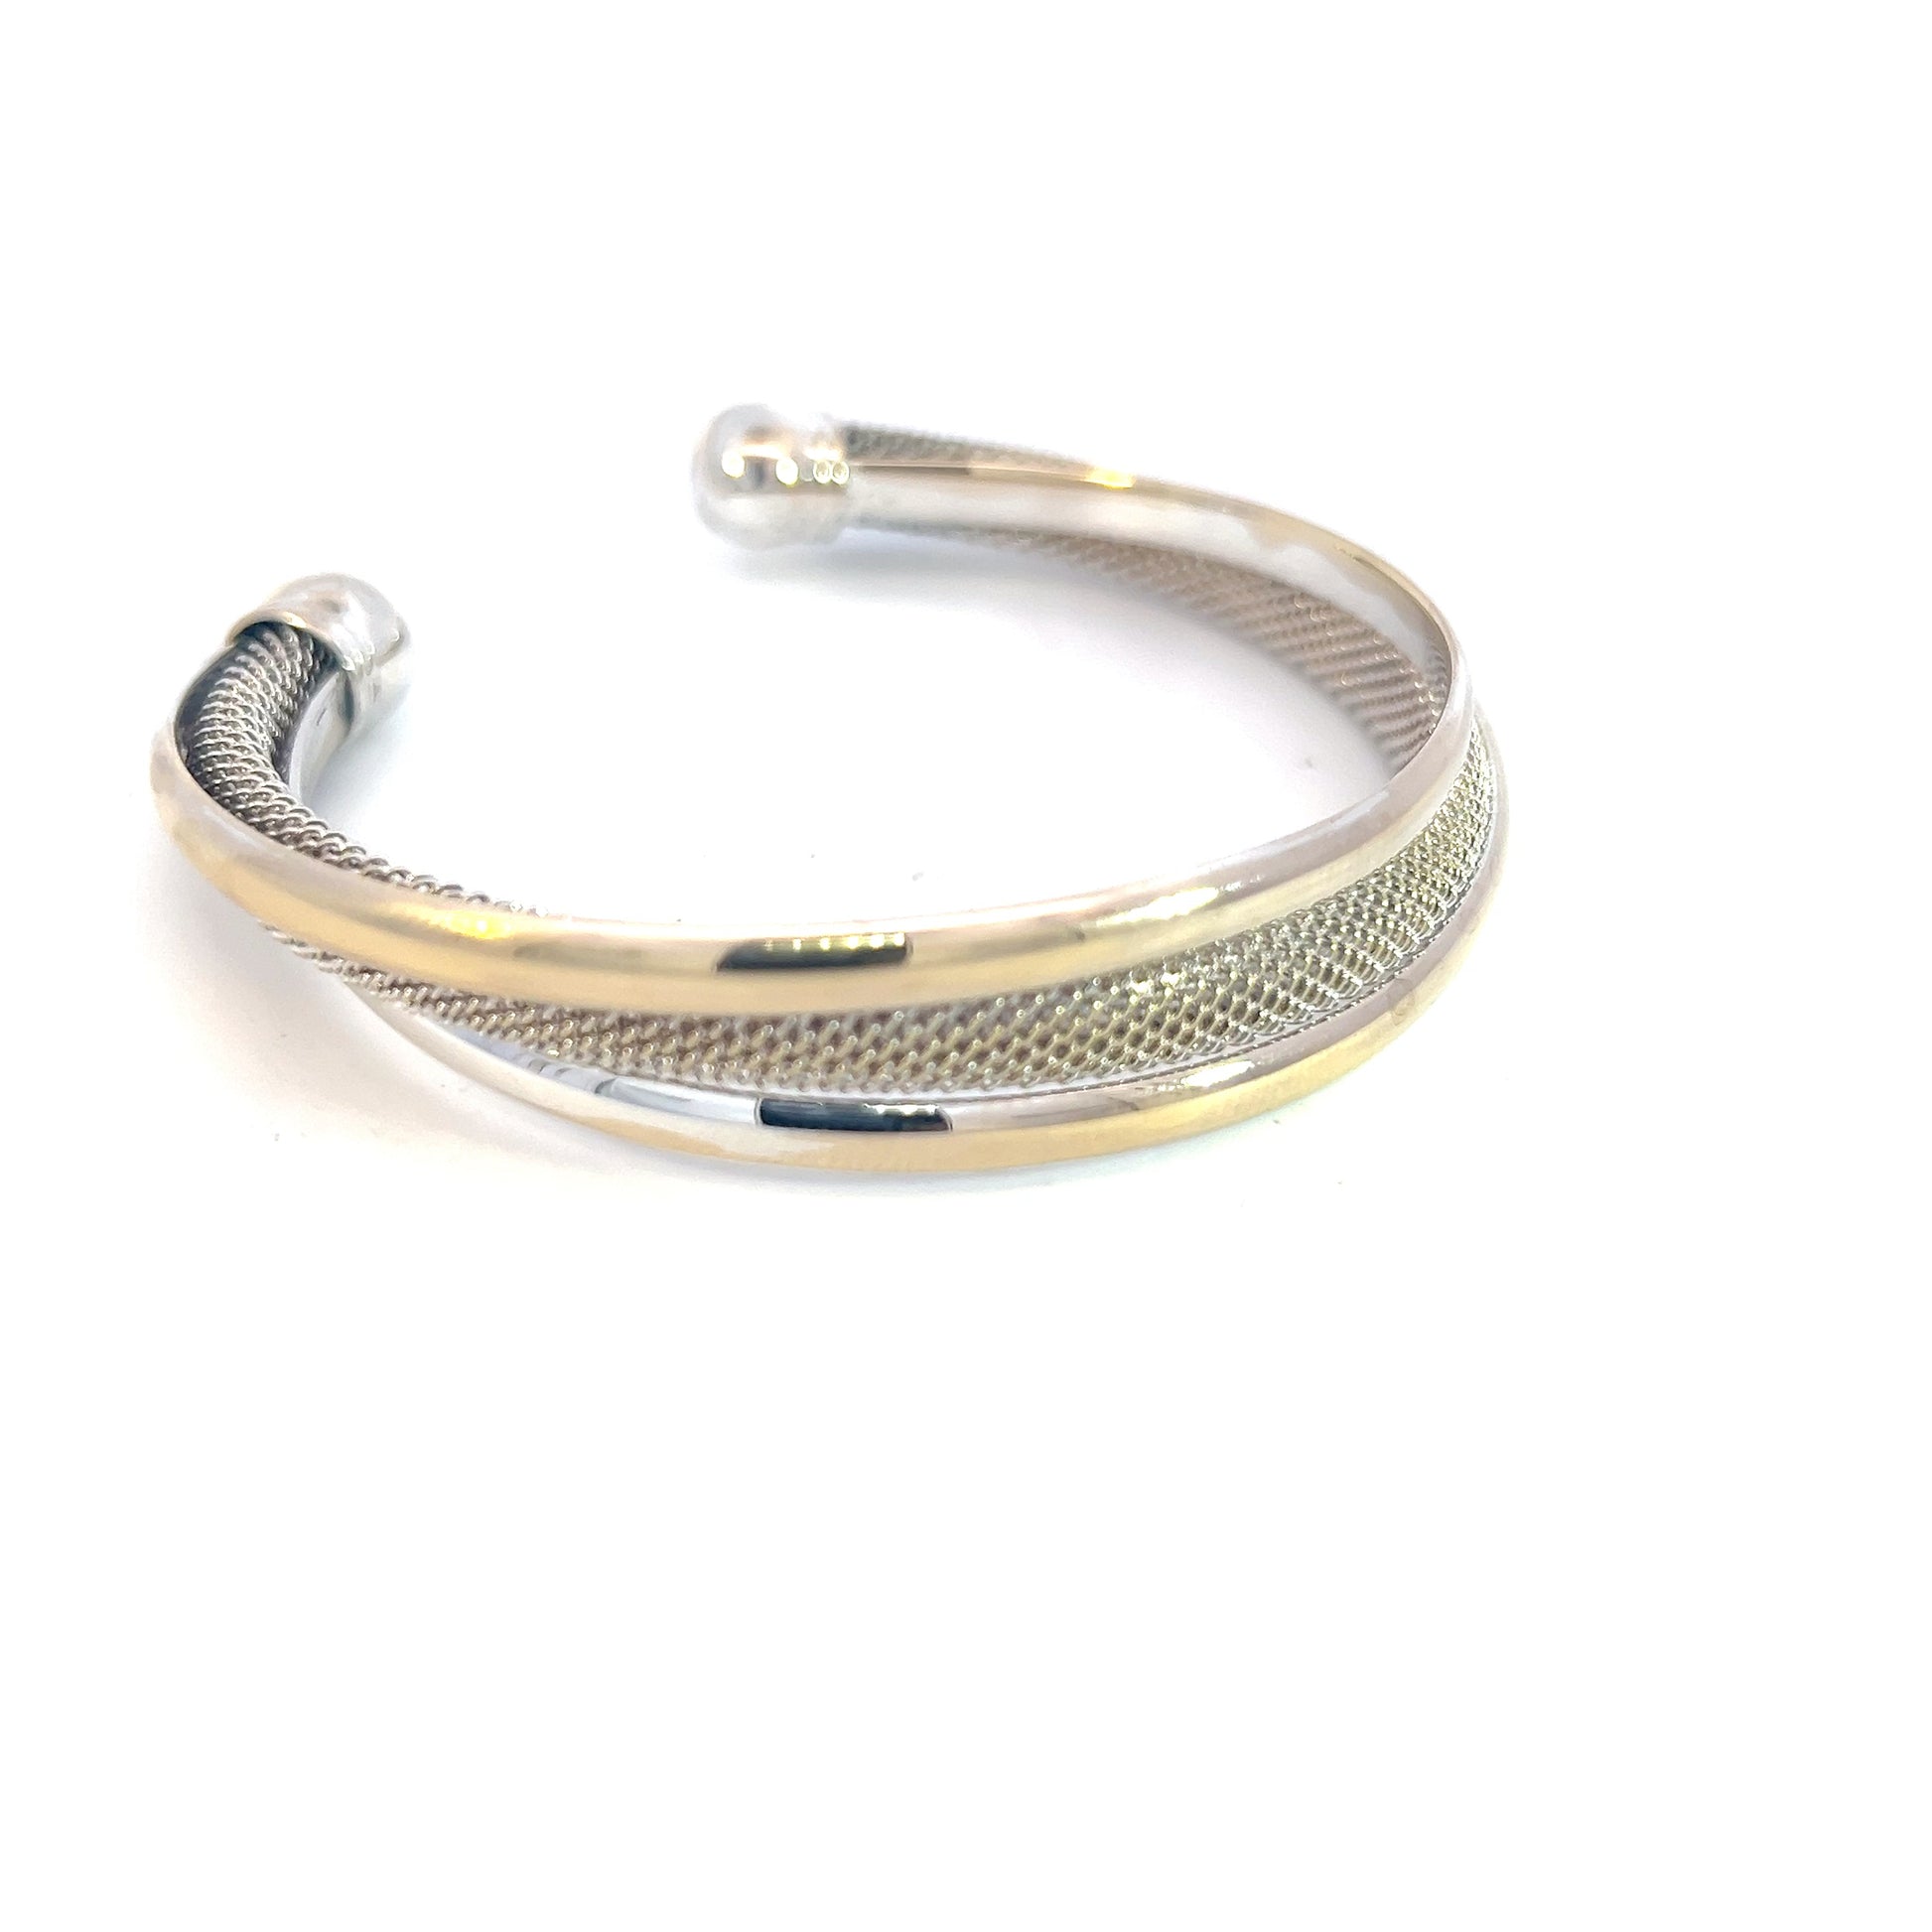 Tiffany & Co Estate Somerset Cuff Bracelet 7" Sterling Silver TIF619 - Certified Fine Jewelry